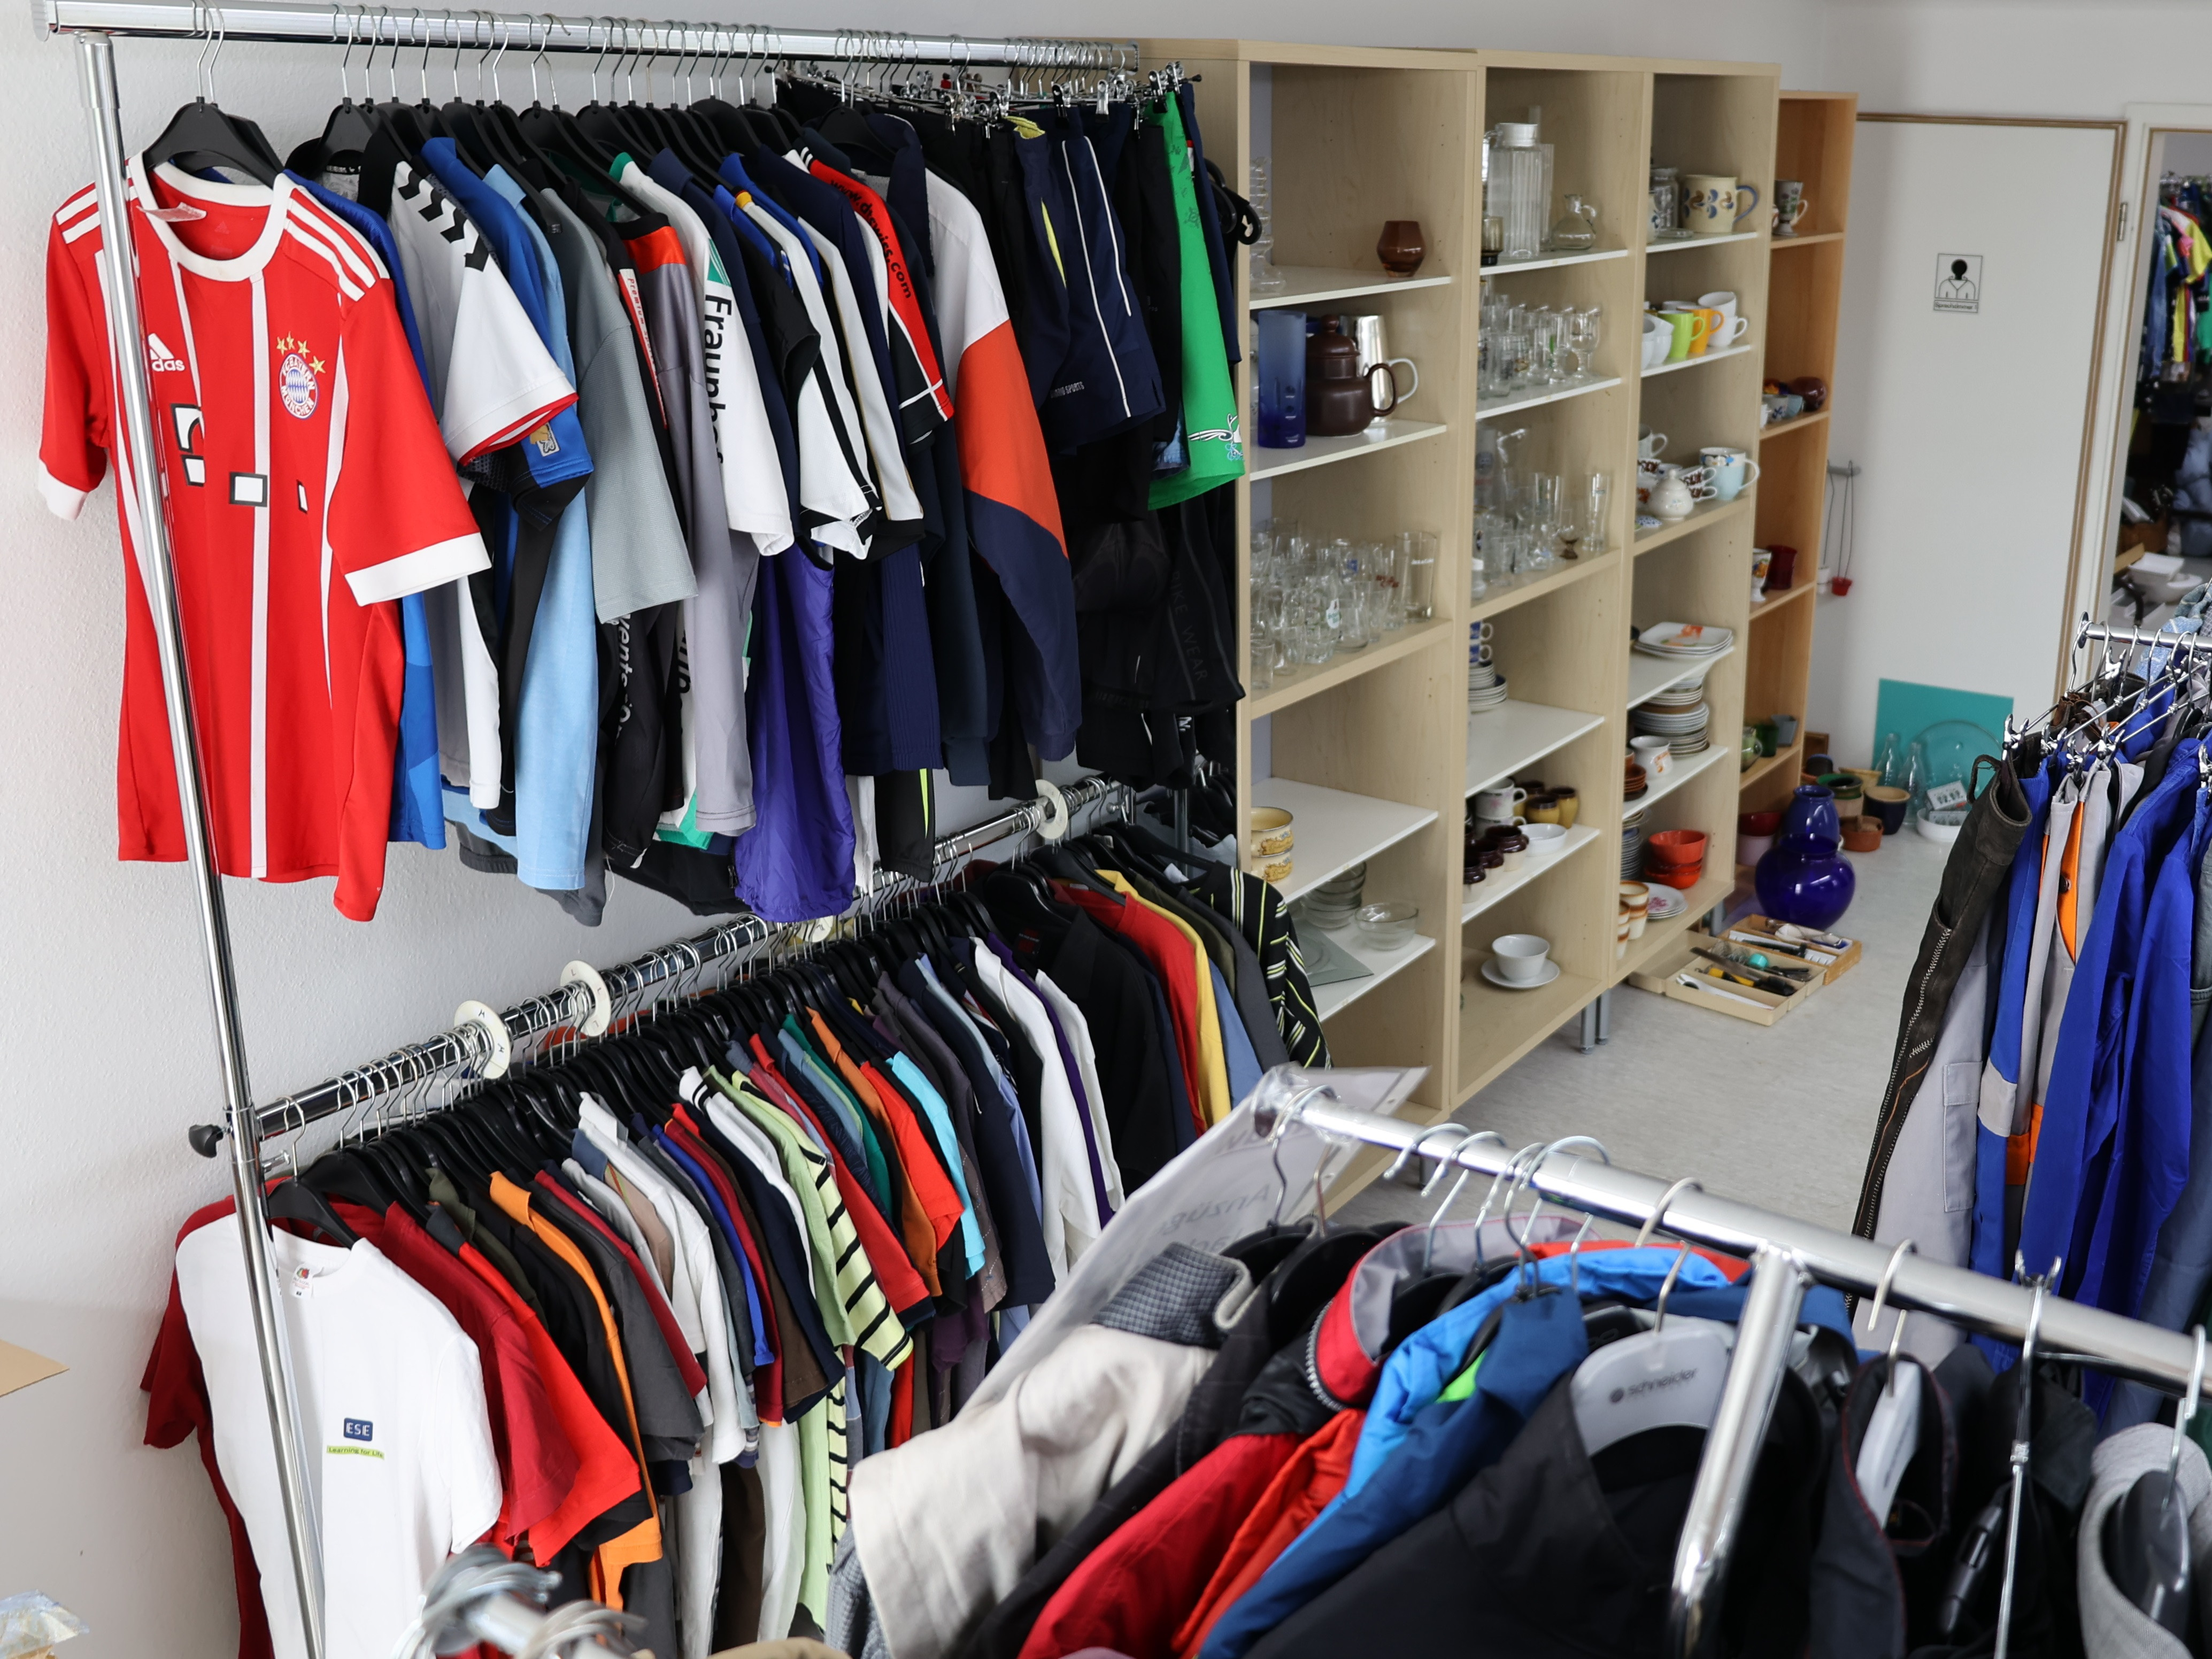  zu sehen ist ein Raum der Kleiderkammer mit gefüllten Kleiderständern und Regalen 